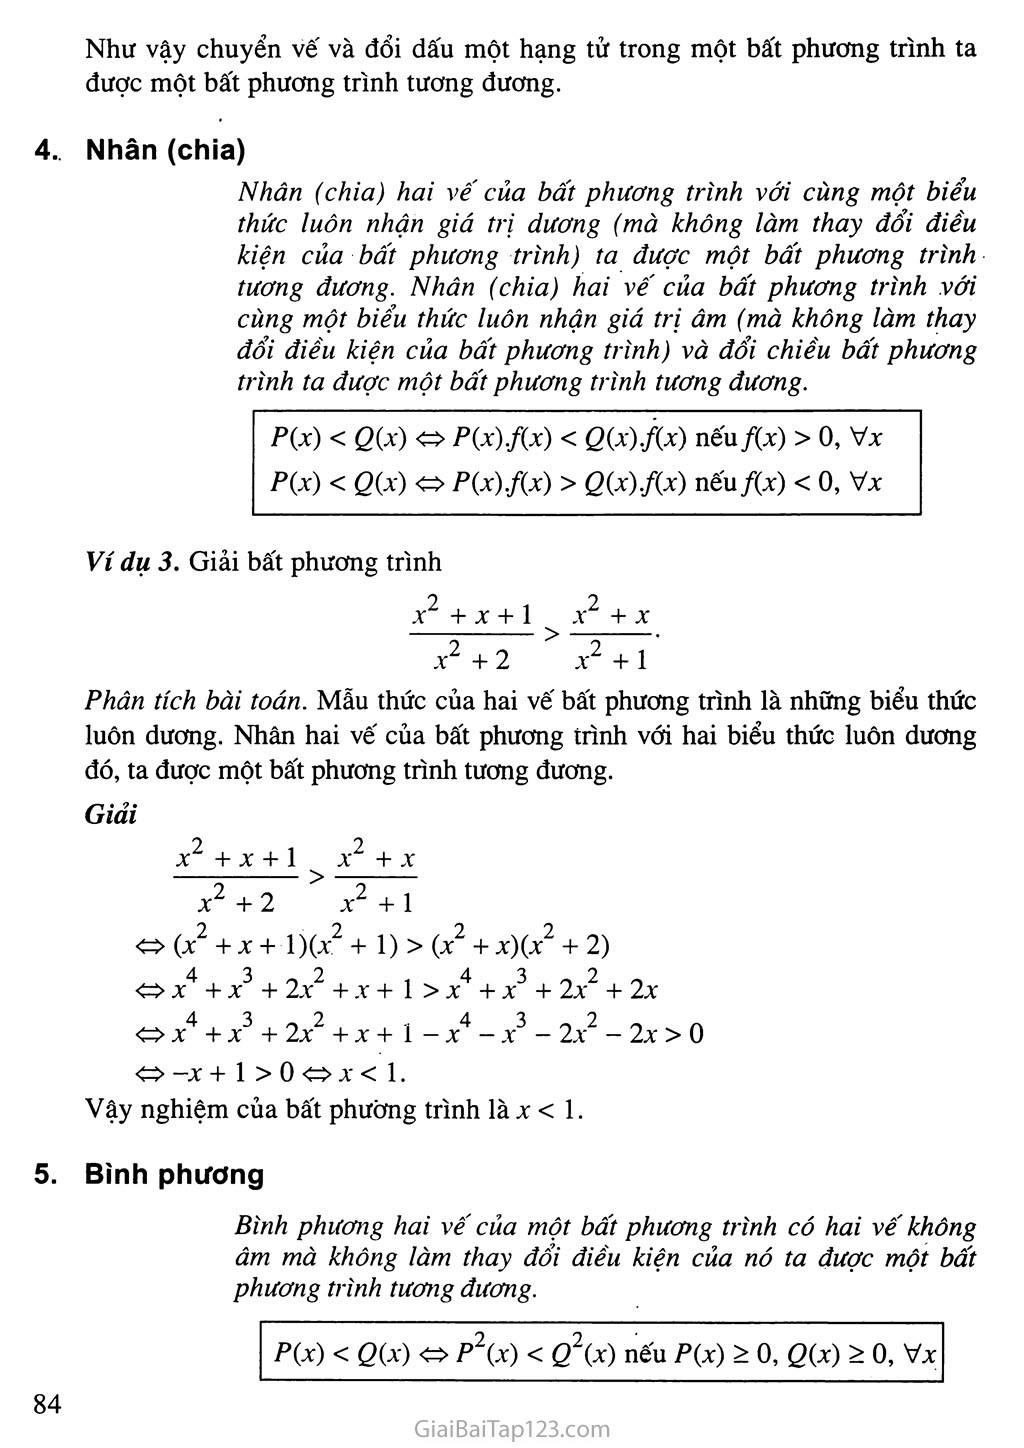 Bài 2. Bất phương trình và hệ bất phương trình một ẩn trang 5